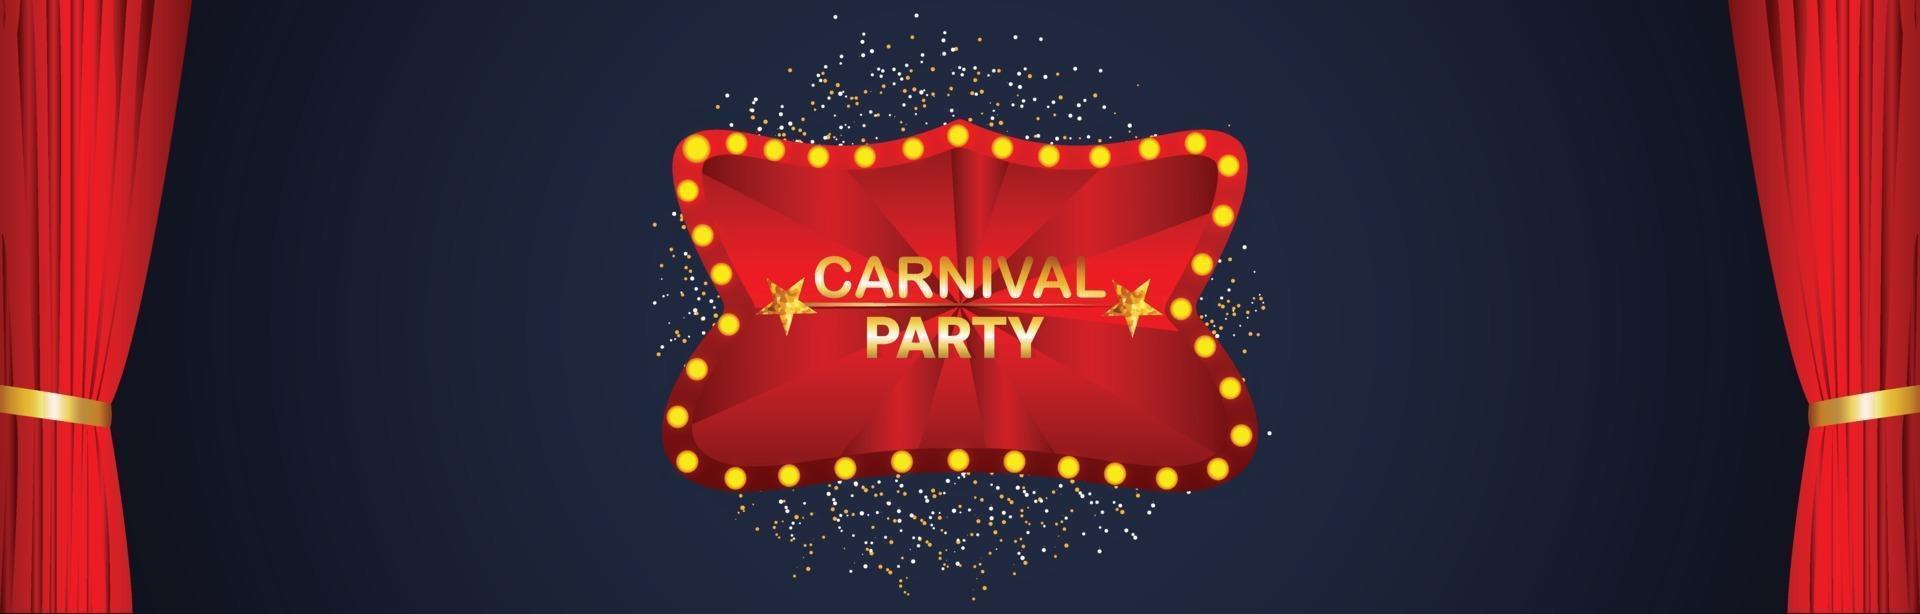 cartão de convite para festa de carnaval com tenda de circo vetor